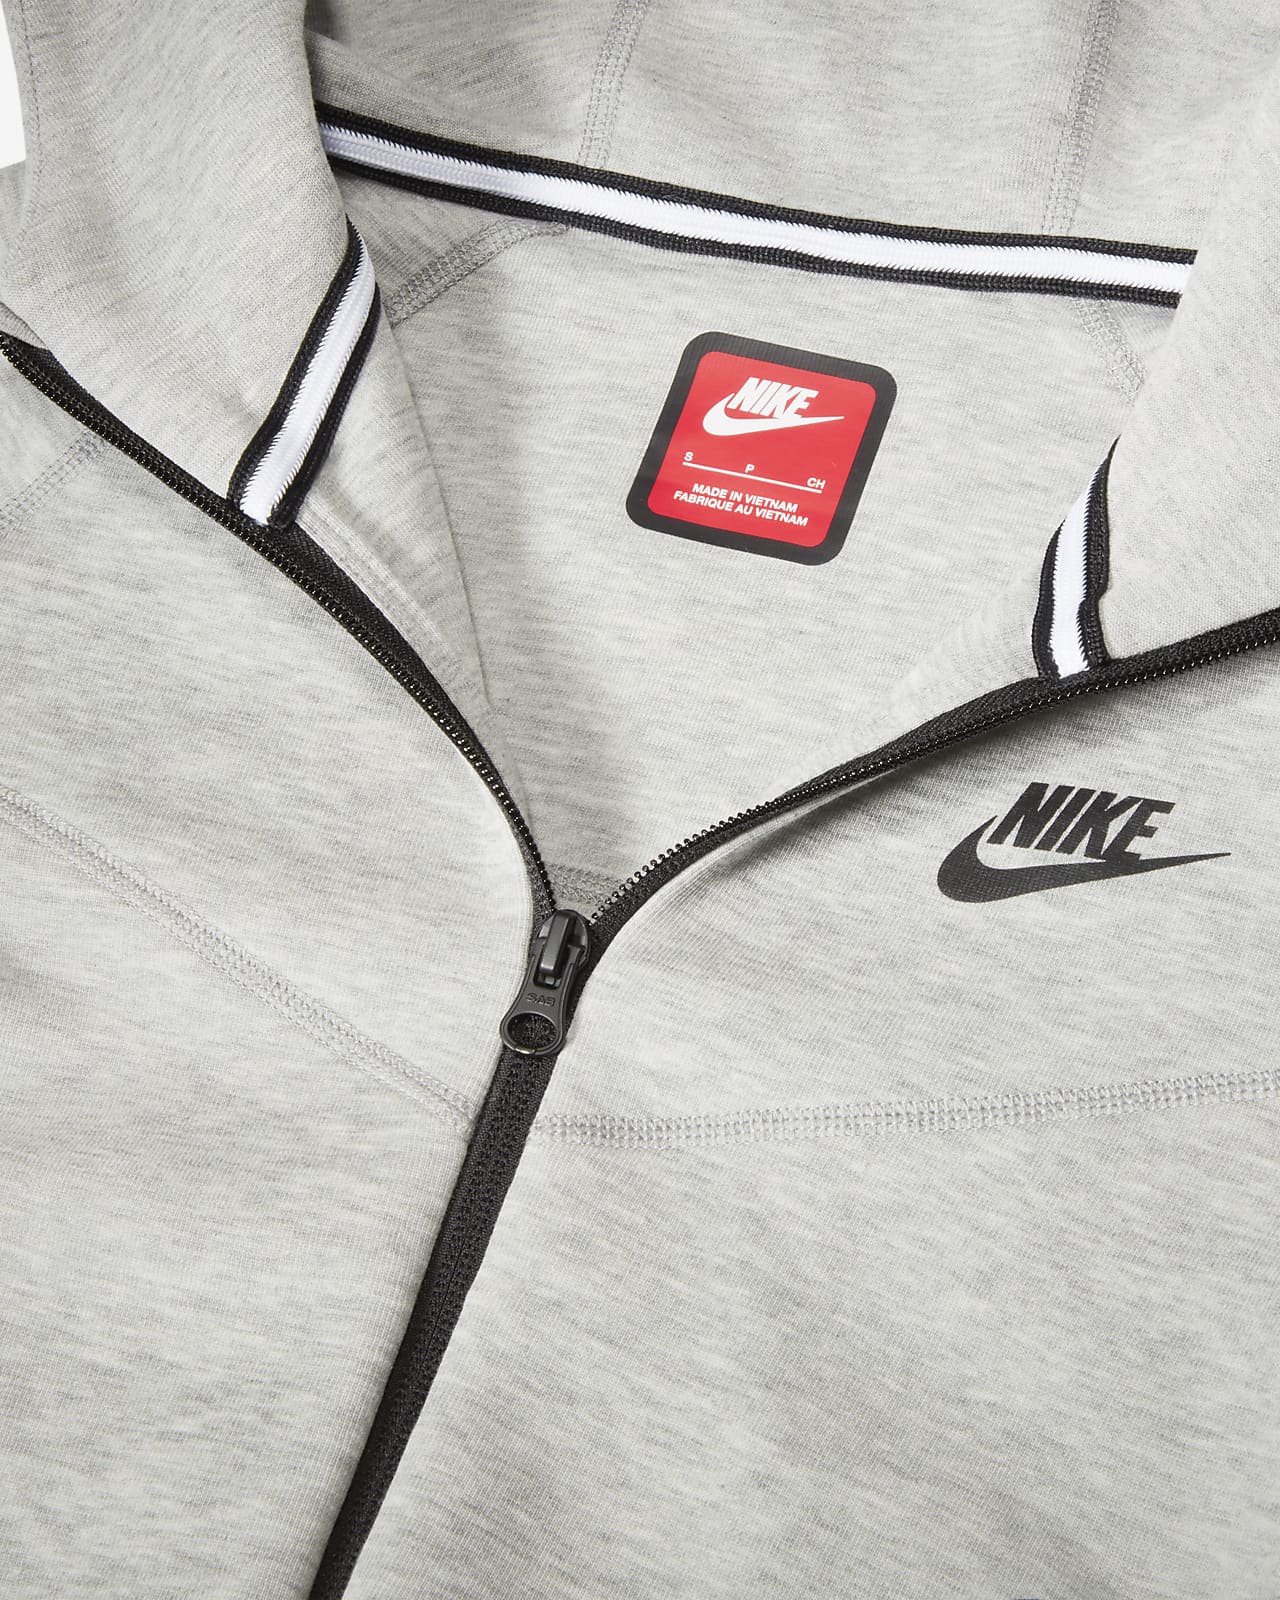 Boys' Nike Sportswear Tech Fleece Full-Zip Hoodie